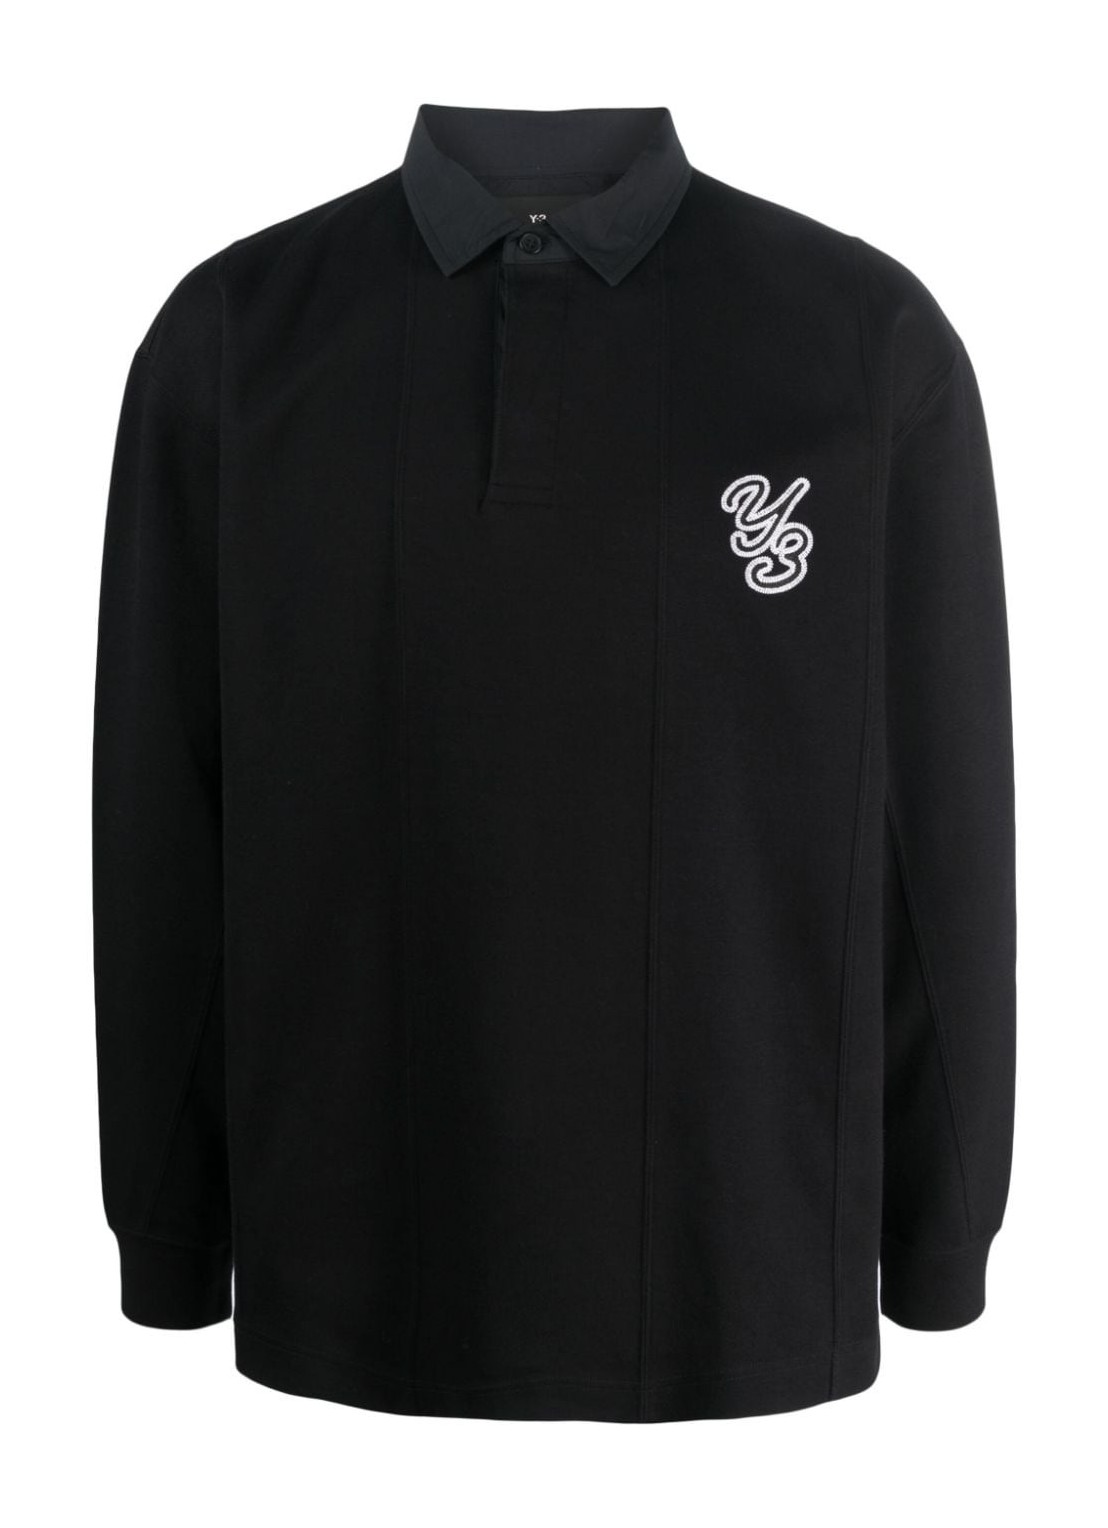 Polo y3 polo man rugby ls shirt il4618 black black talla L
 